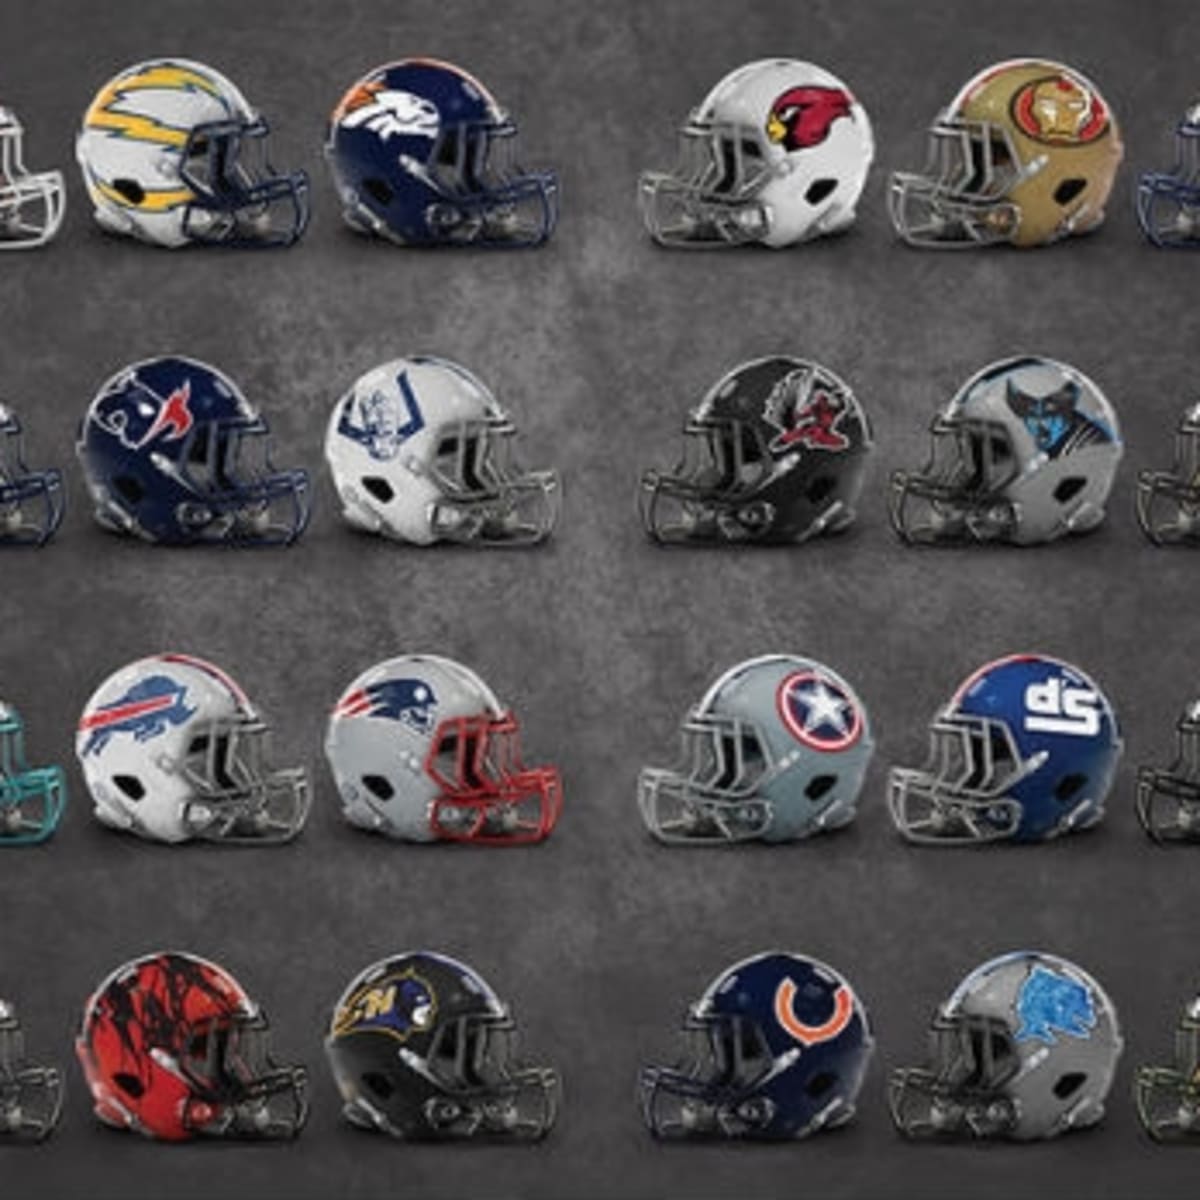 Marvel themed NFL Helmets